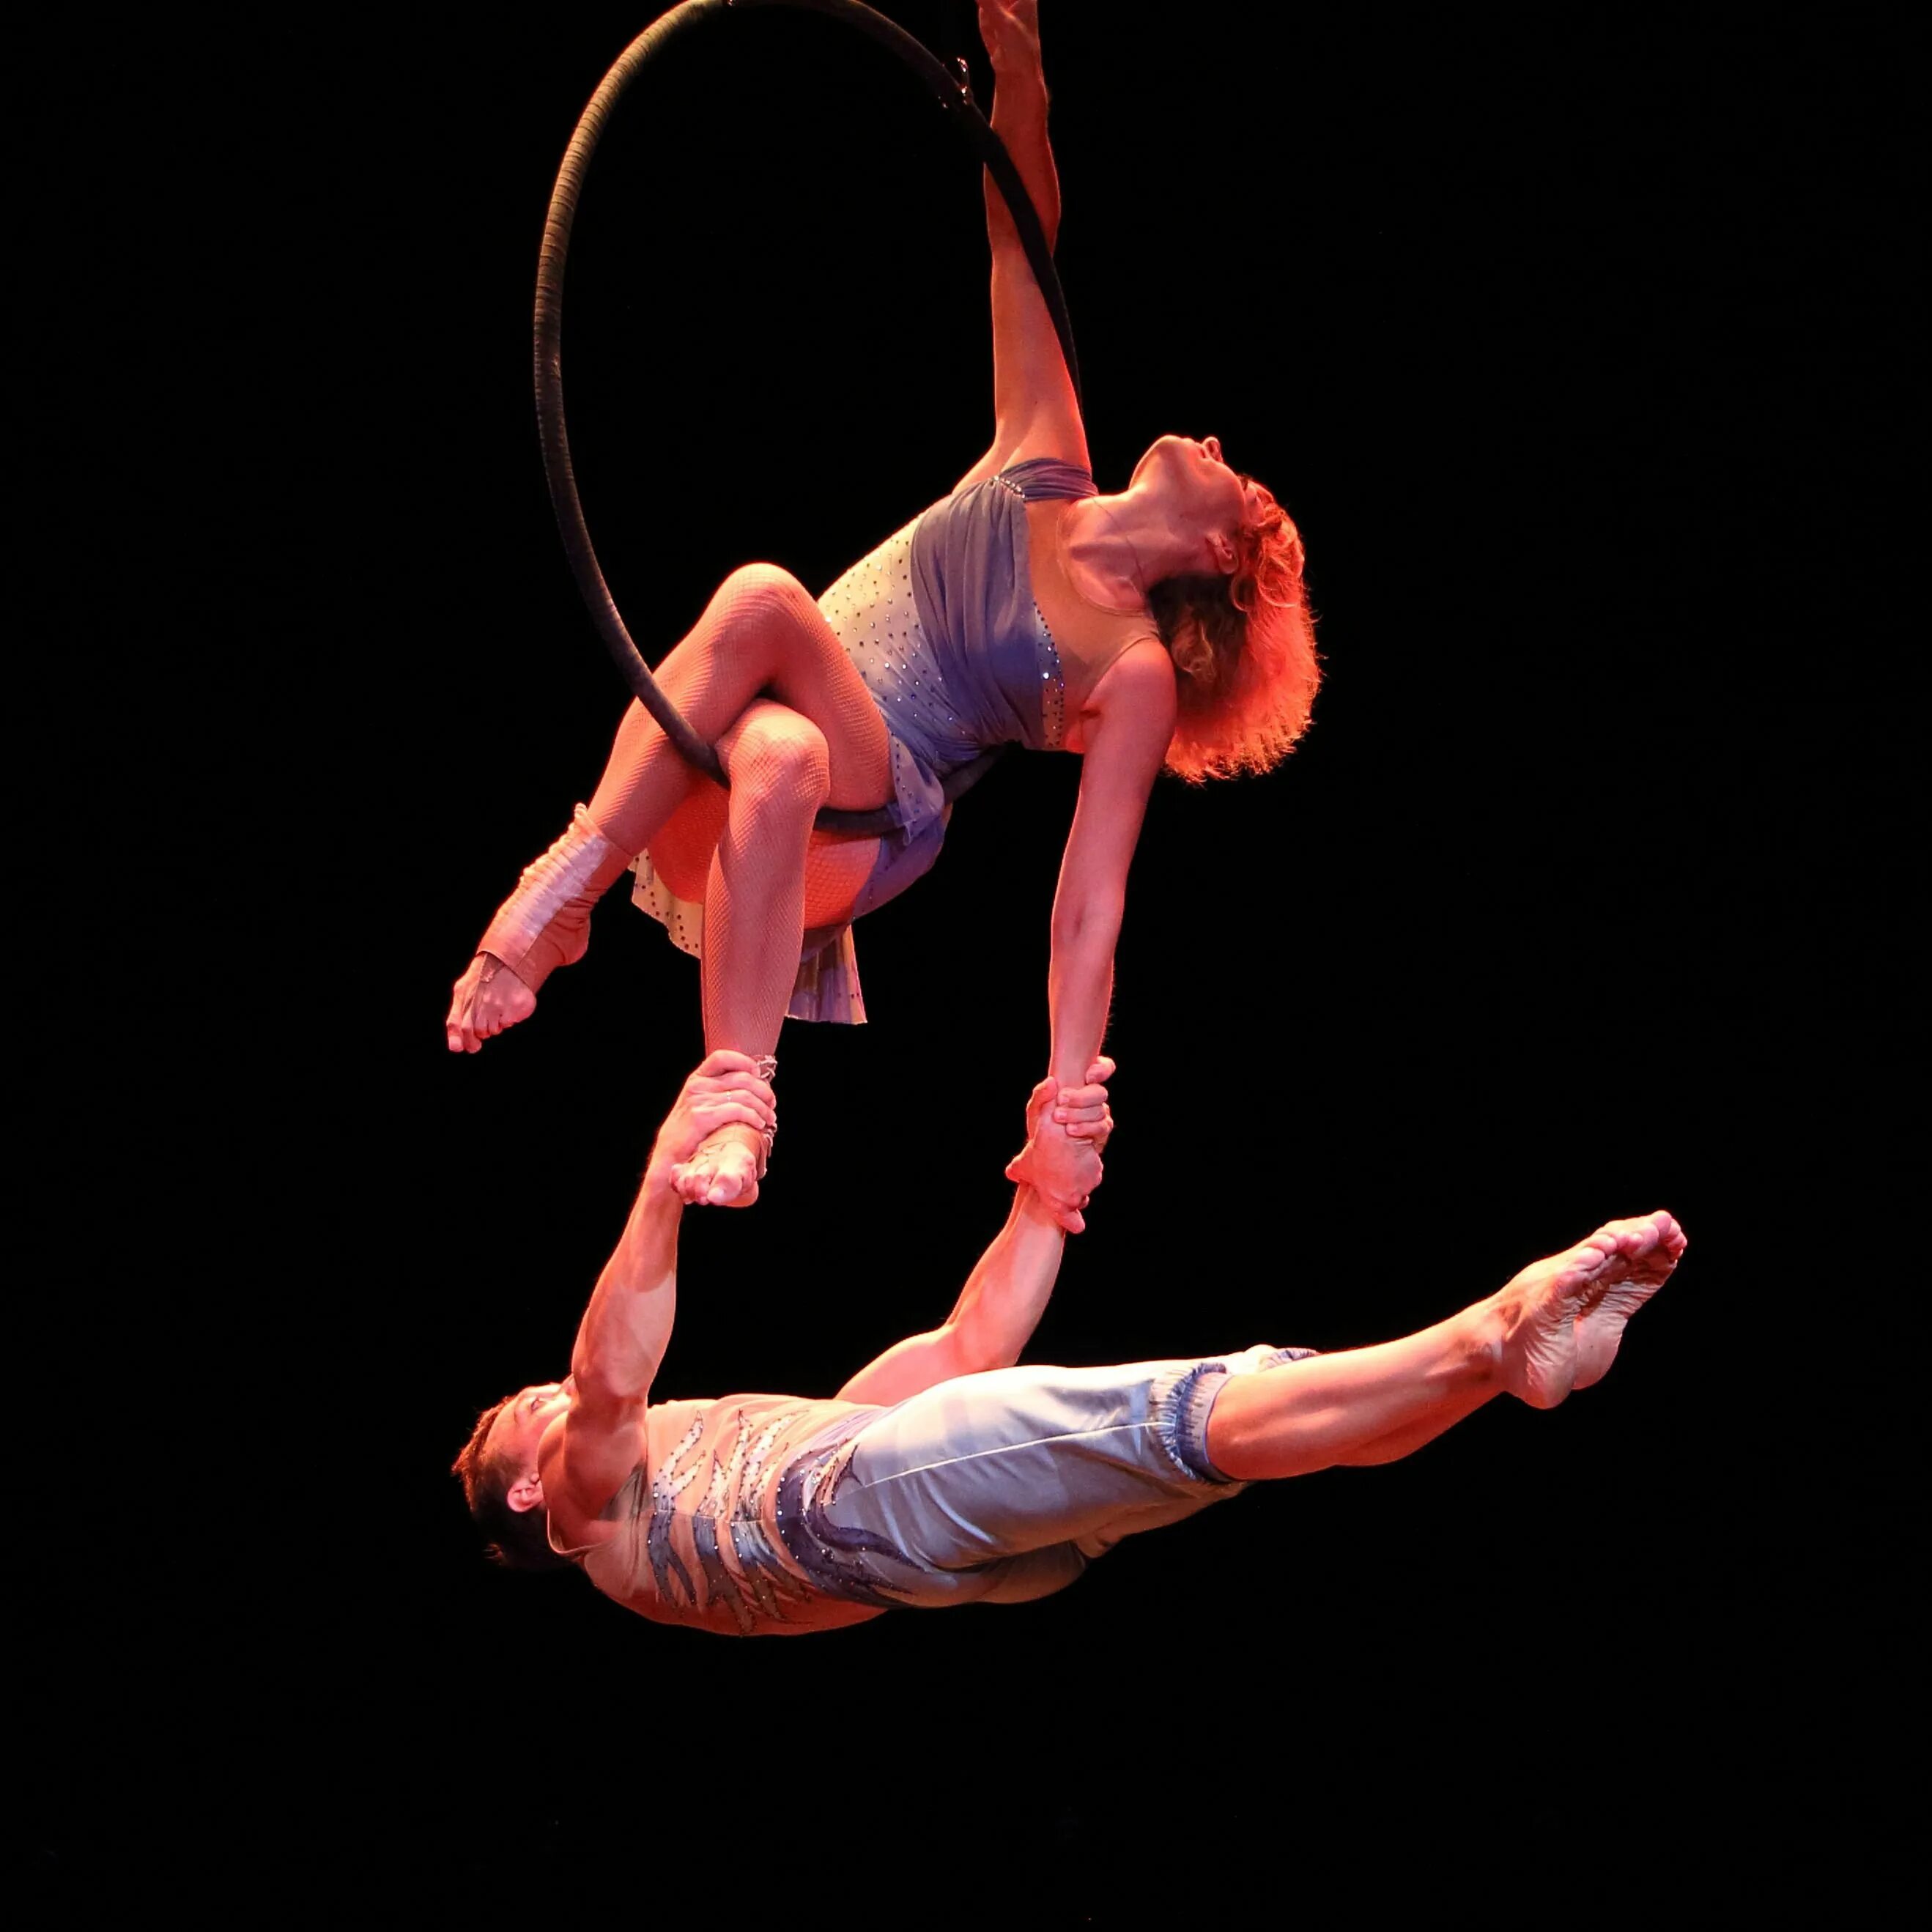 Эквилибристика гимнастика цирк. Aerial Hoop воздушное кольцо. Воздушные гимнасты дуэт. Гимнастки в цирке выступление